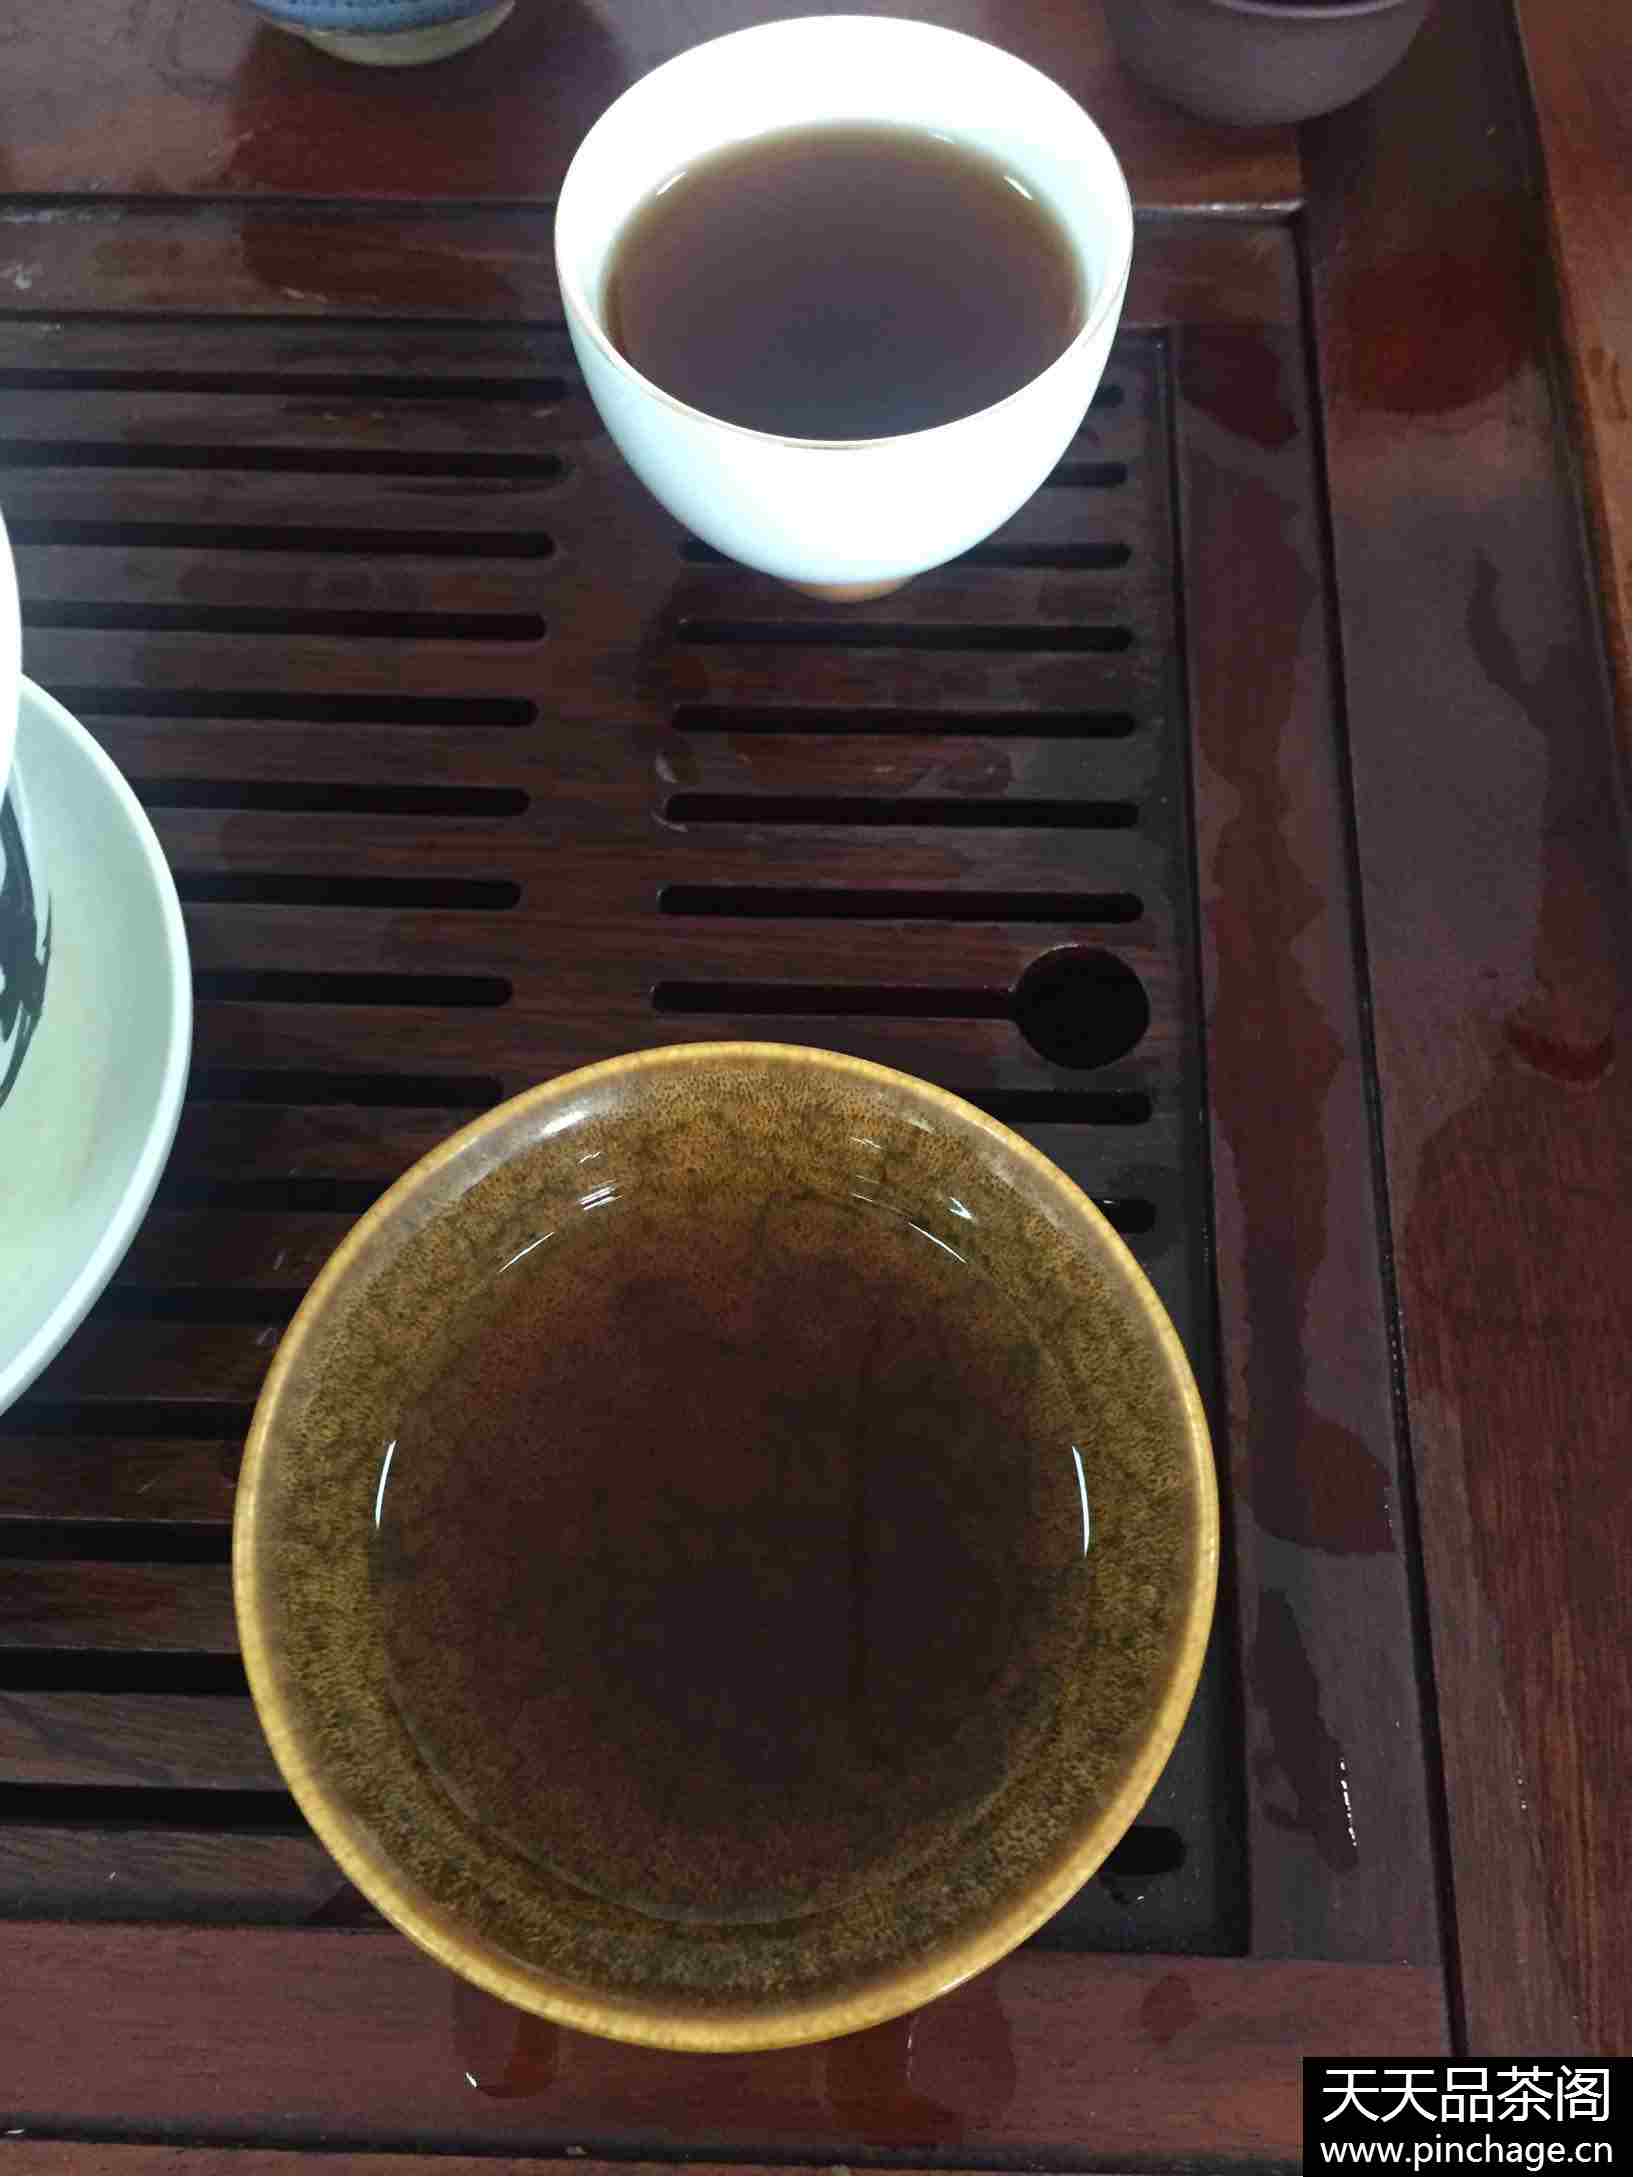 喝一杯纯正的普洱古树茶